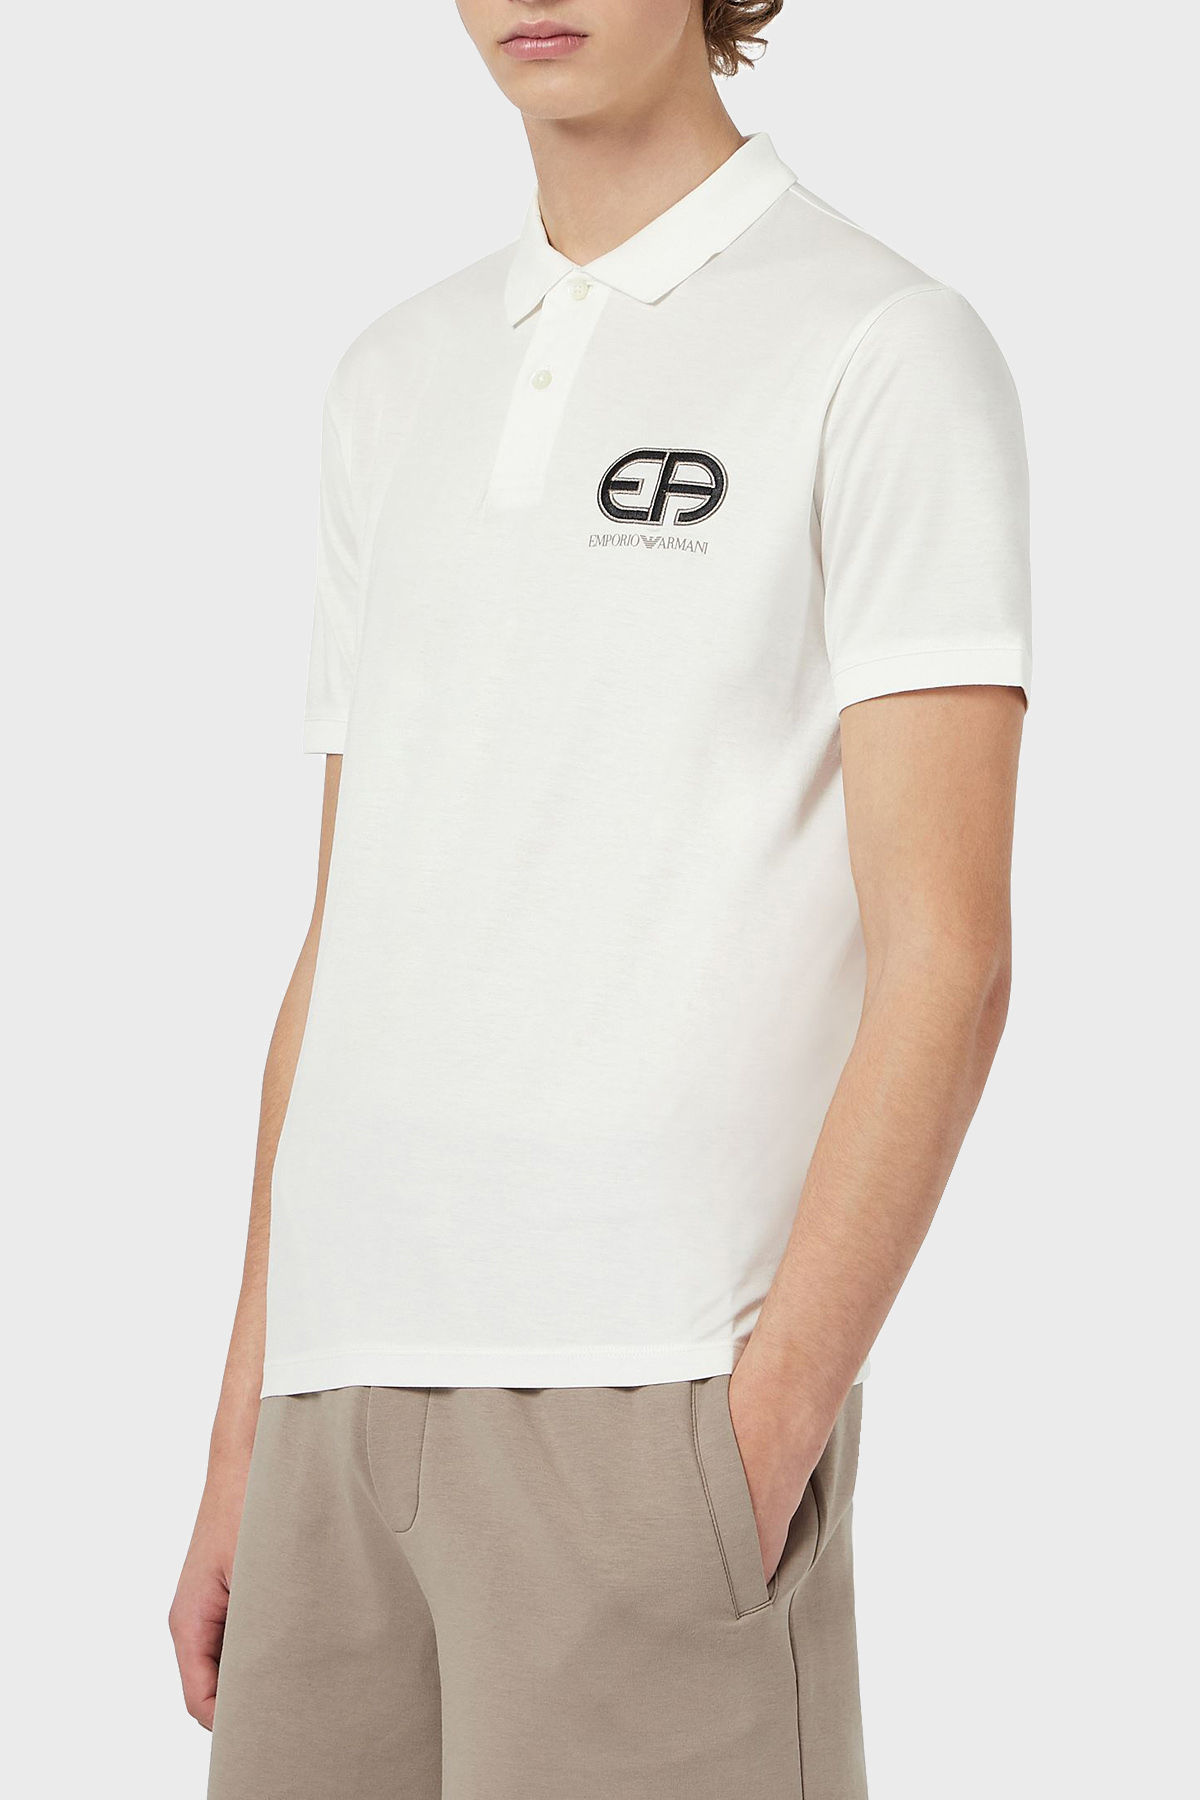 Emporio Armani Marka Logolu Düğmeli T Shirt Erkek Polo 3K1FB7 1JUVZ 0101 BEYAZ